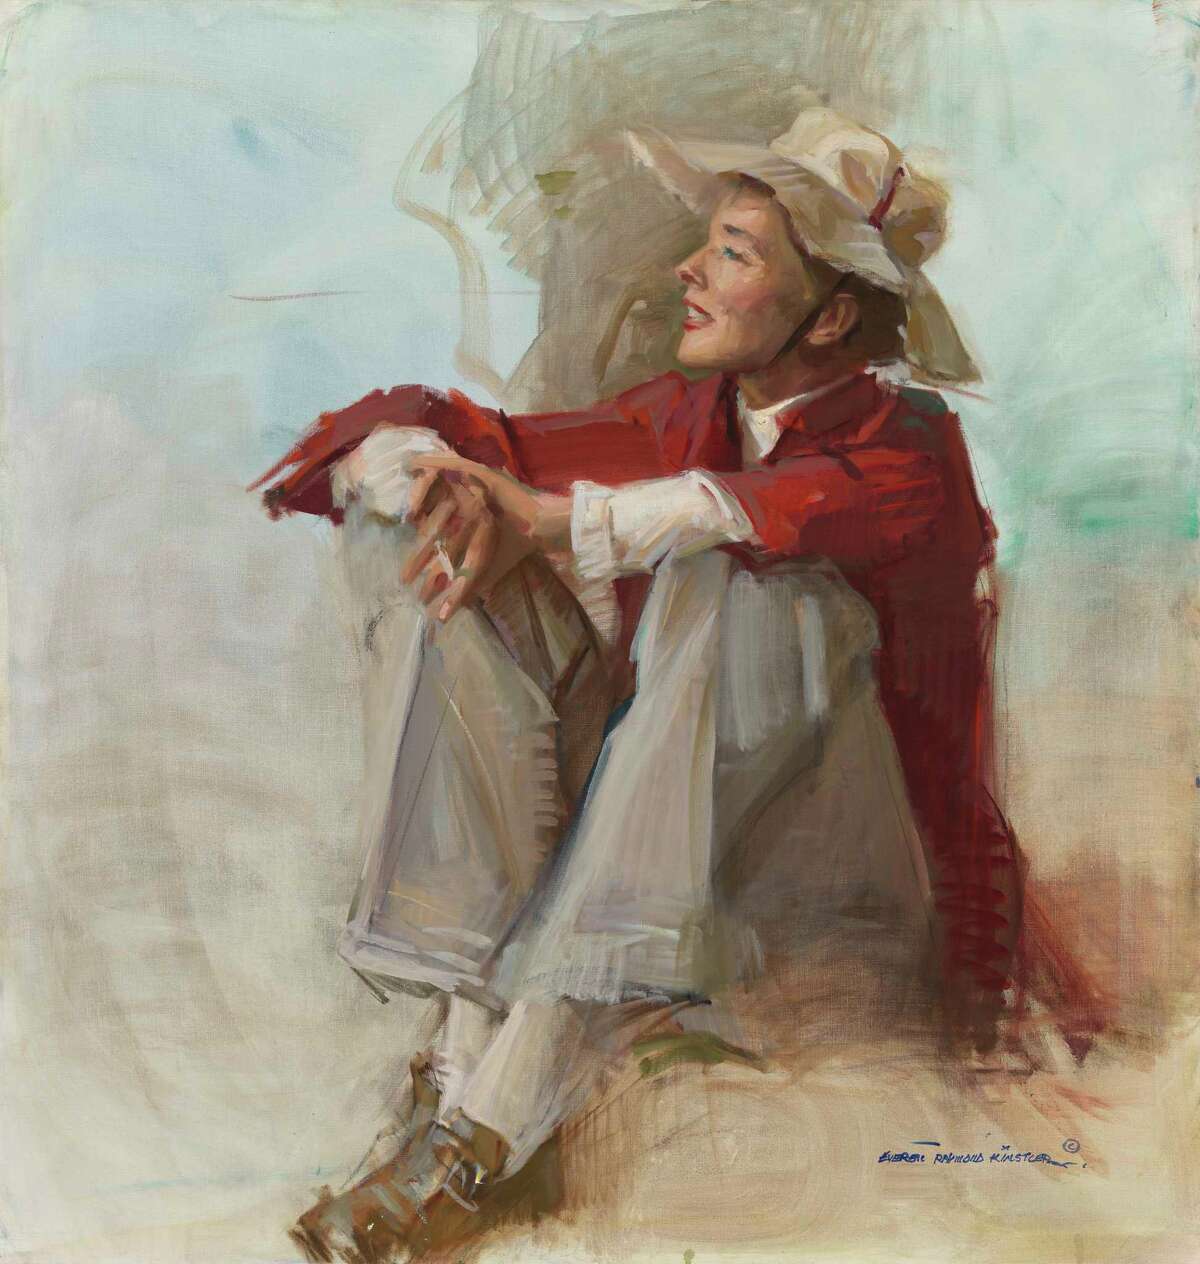 A portrait of Katharine Hepburn painted by Everett Raymond Kinstler in 1982.